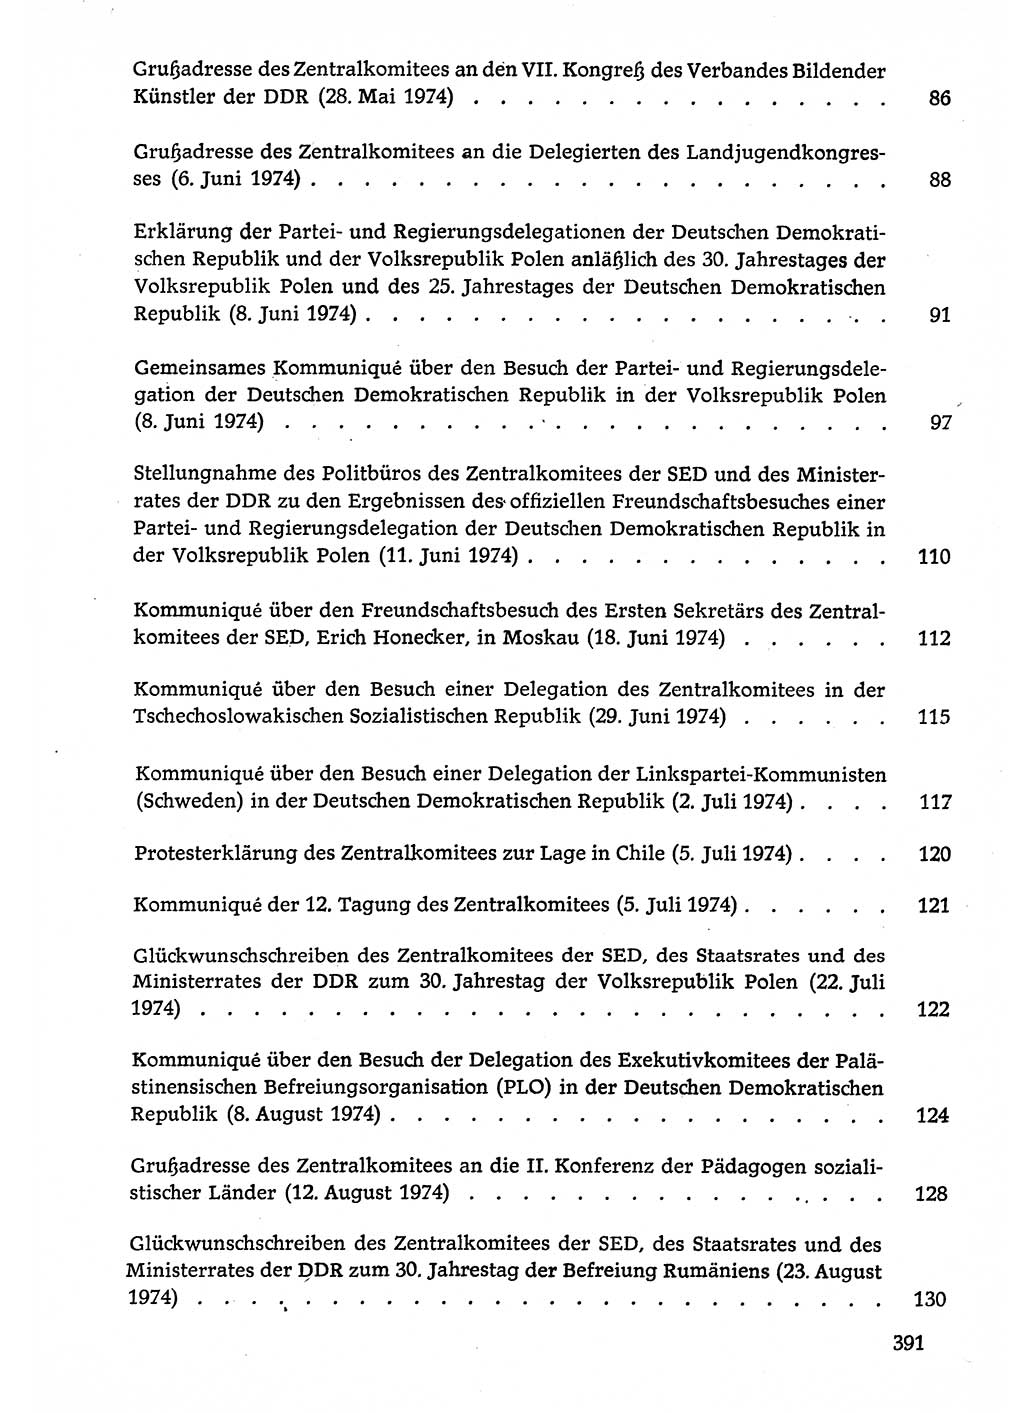 Dokumente der Sozialistischen Einheitspartei Deutschlands (SED) [Deutsche Demokratische Republik (DDR)] 1974-1975, Seite 391 (Dok. SED DDR 1978, Bd. ⅩⅤ, S. 391)